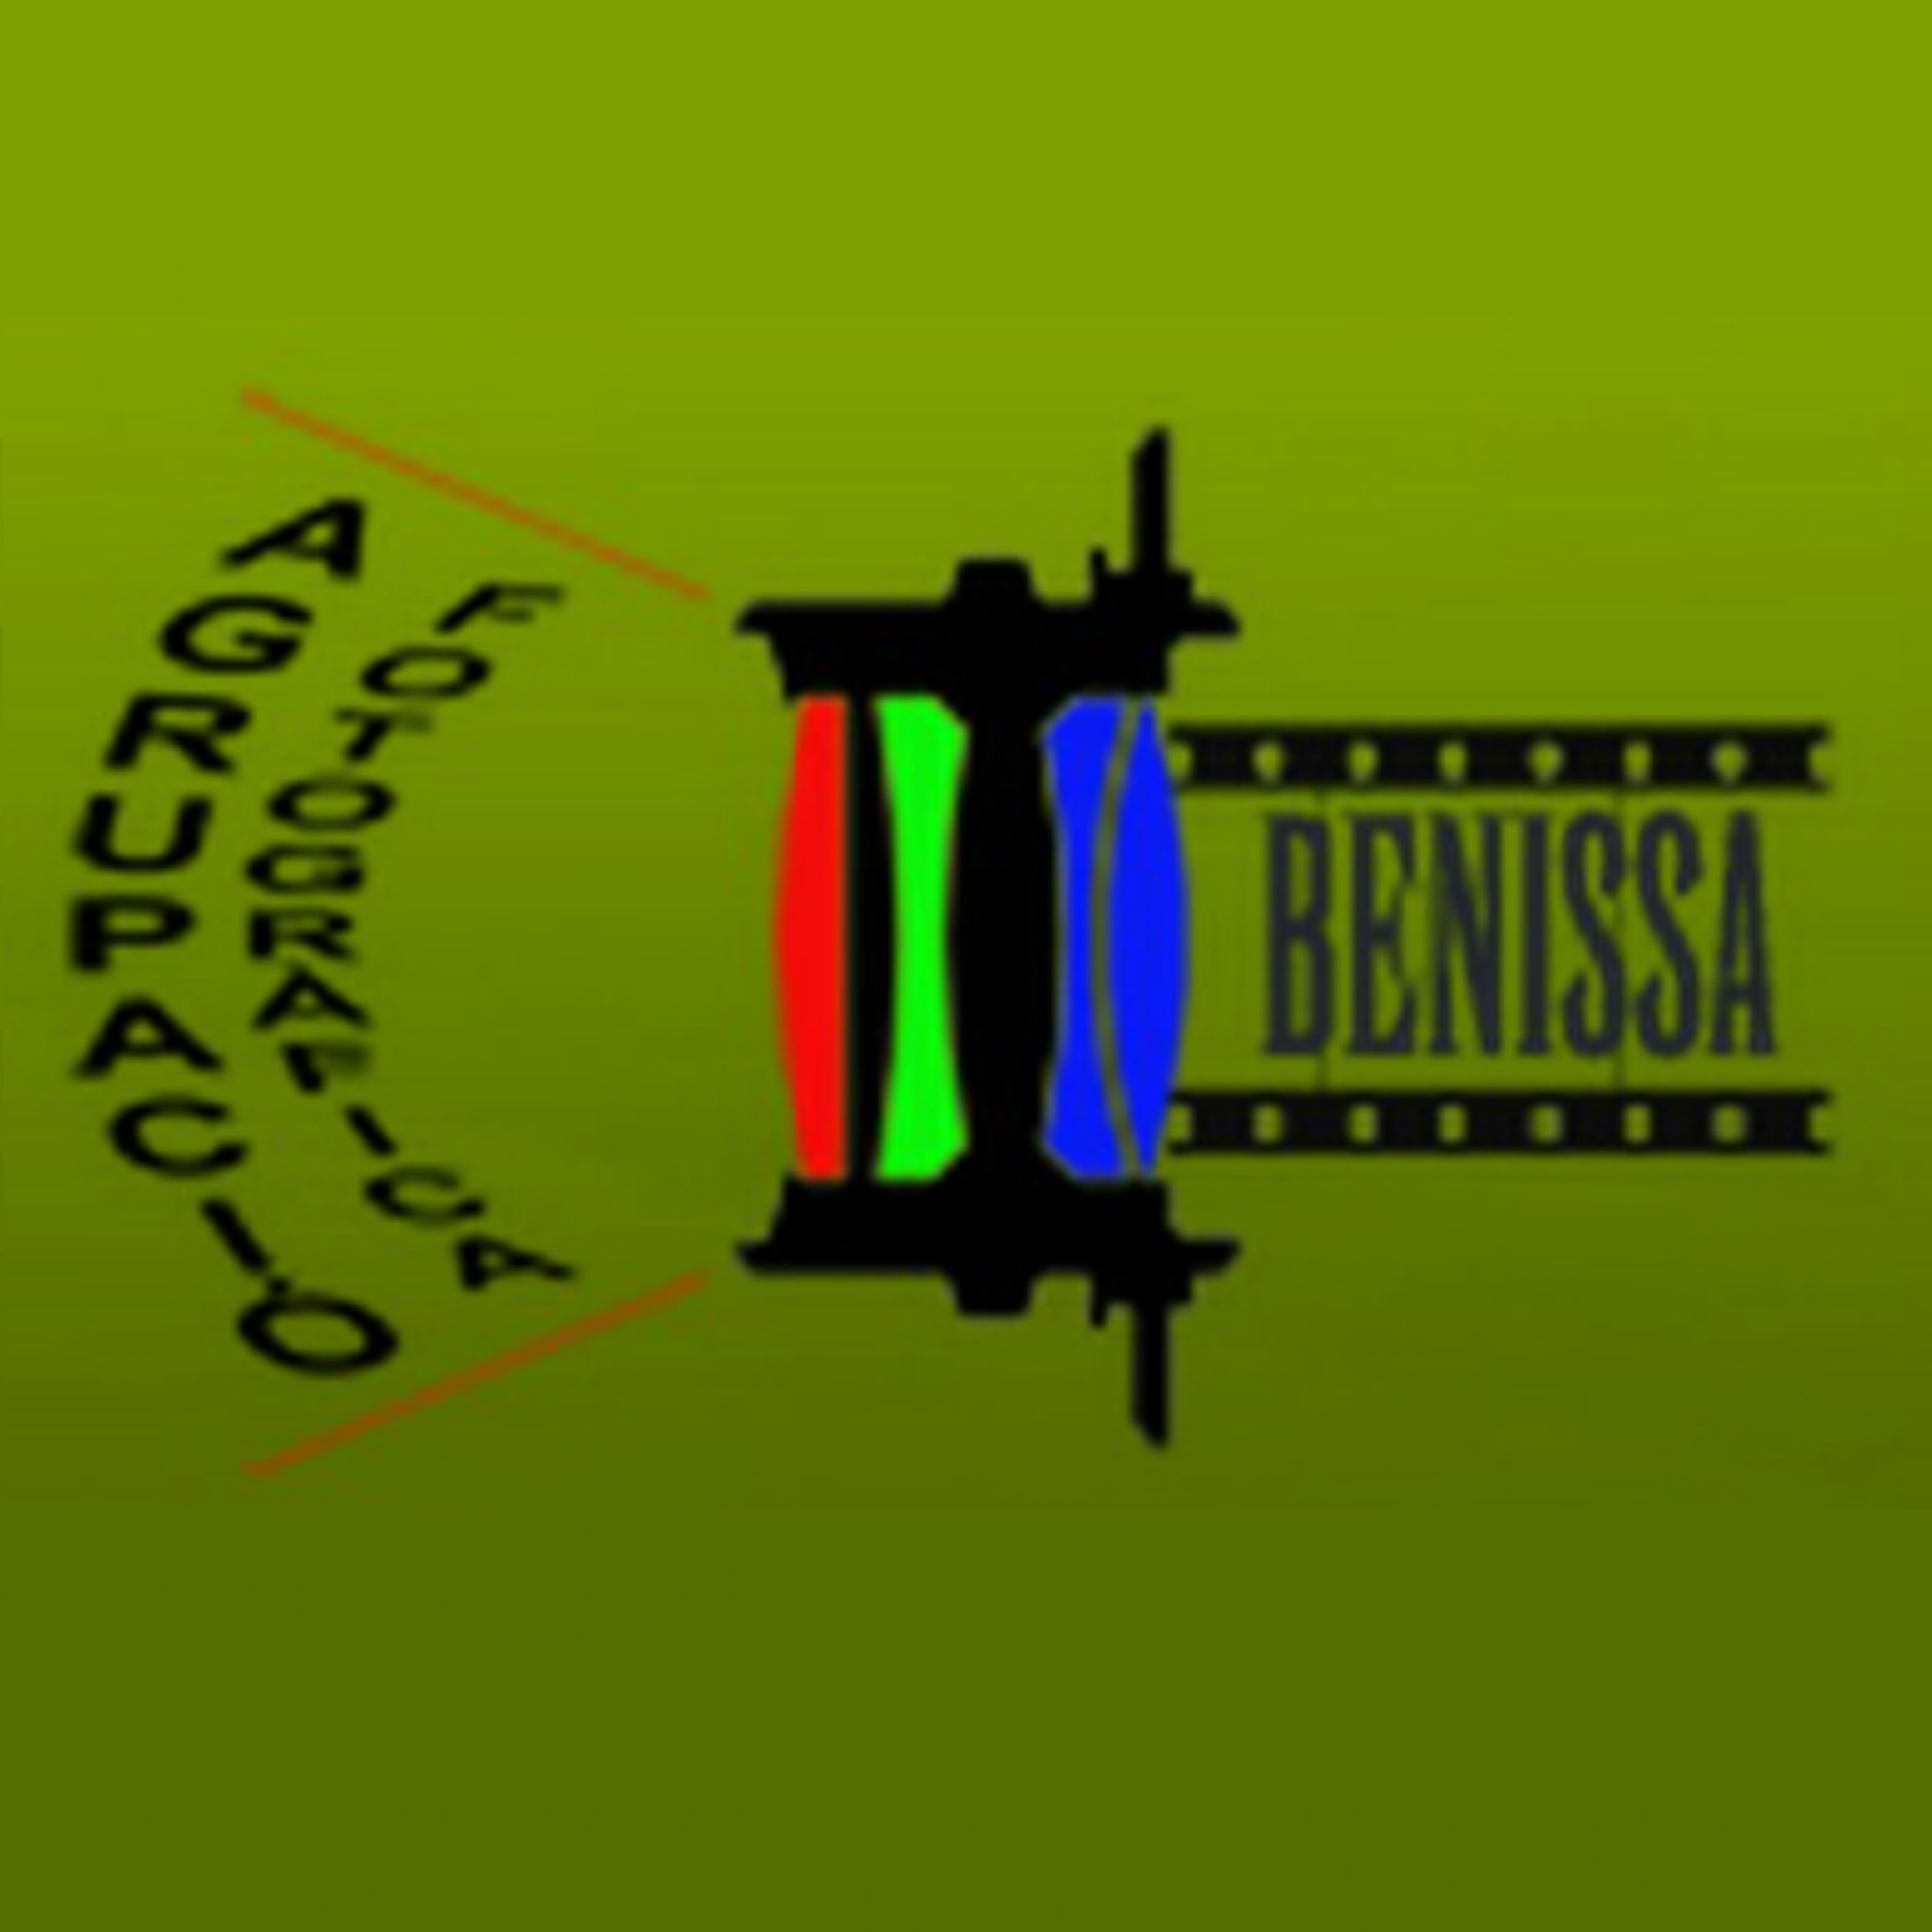 Groupe photographique de Benissa